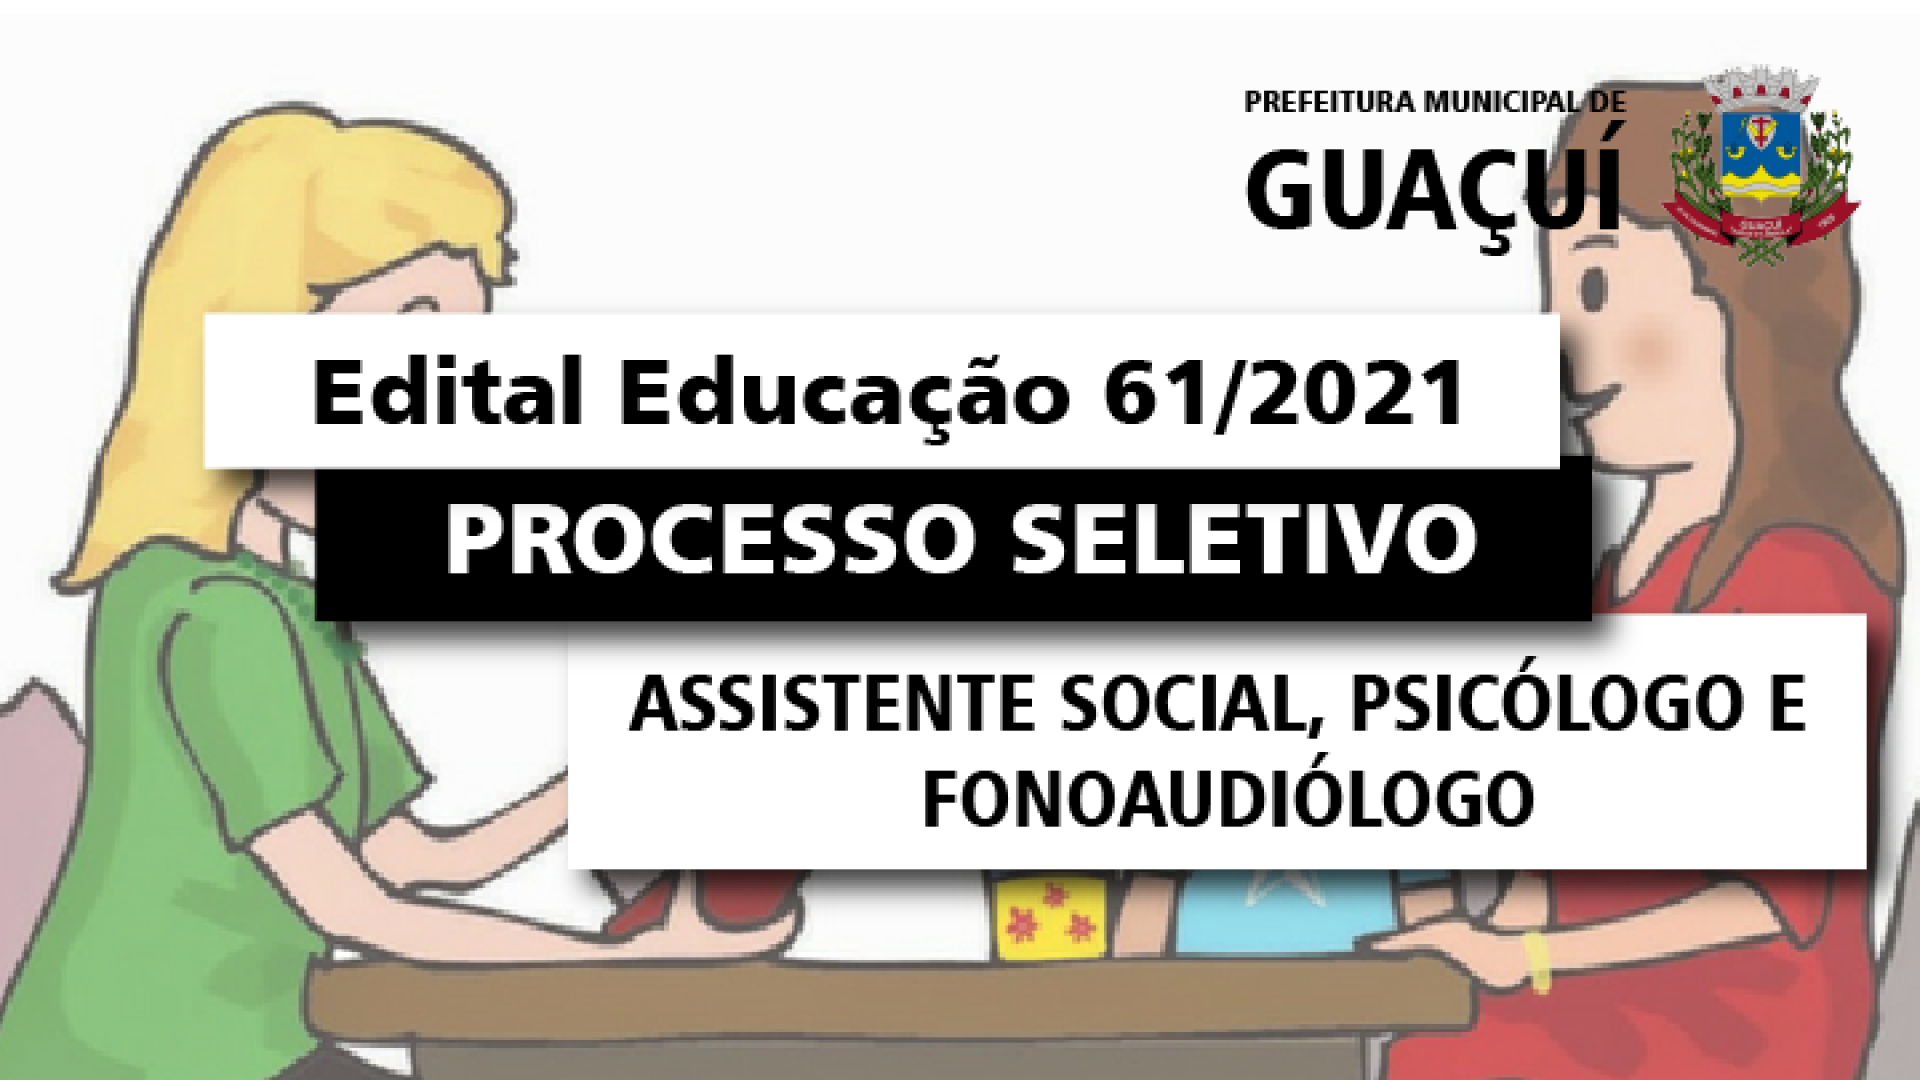 EDITAL EDUCAÇÃO Nº 061/2021 - ASSISTENTE SOCIAL, PSICÓLOGO E FONOAUDIÓLOGO